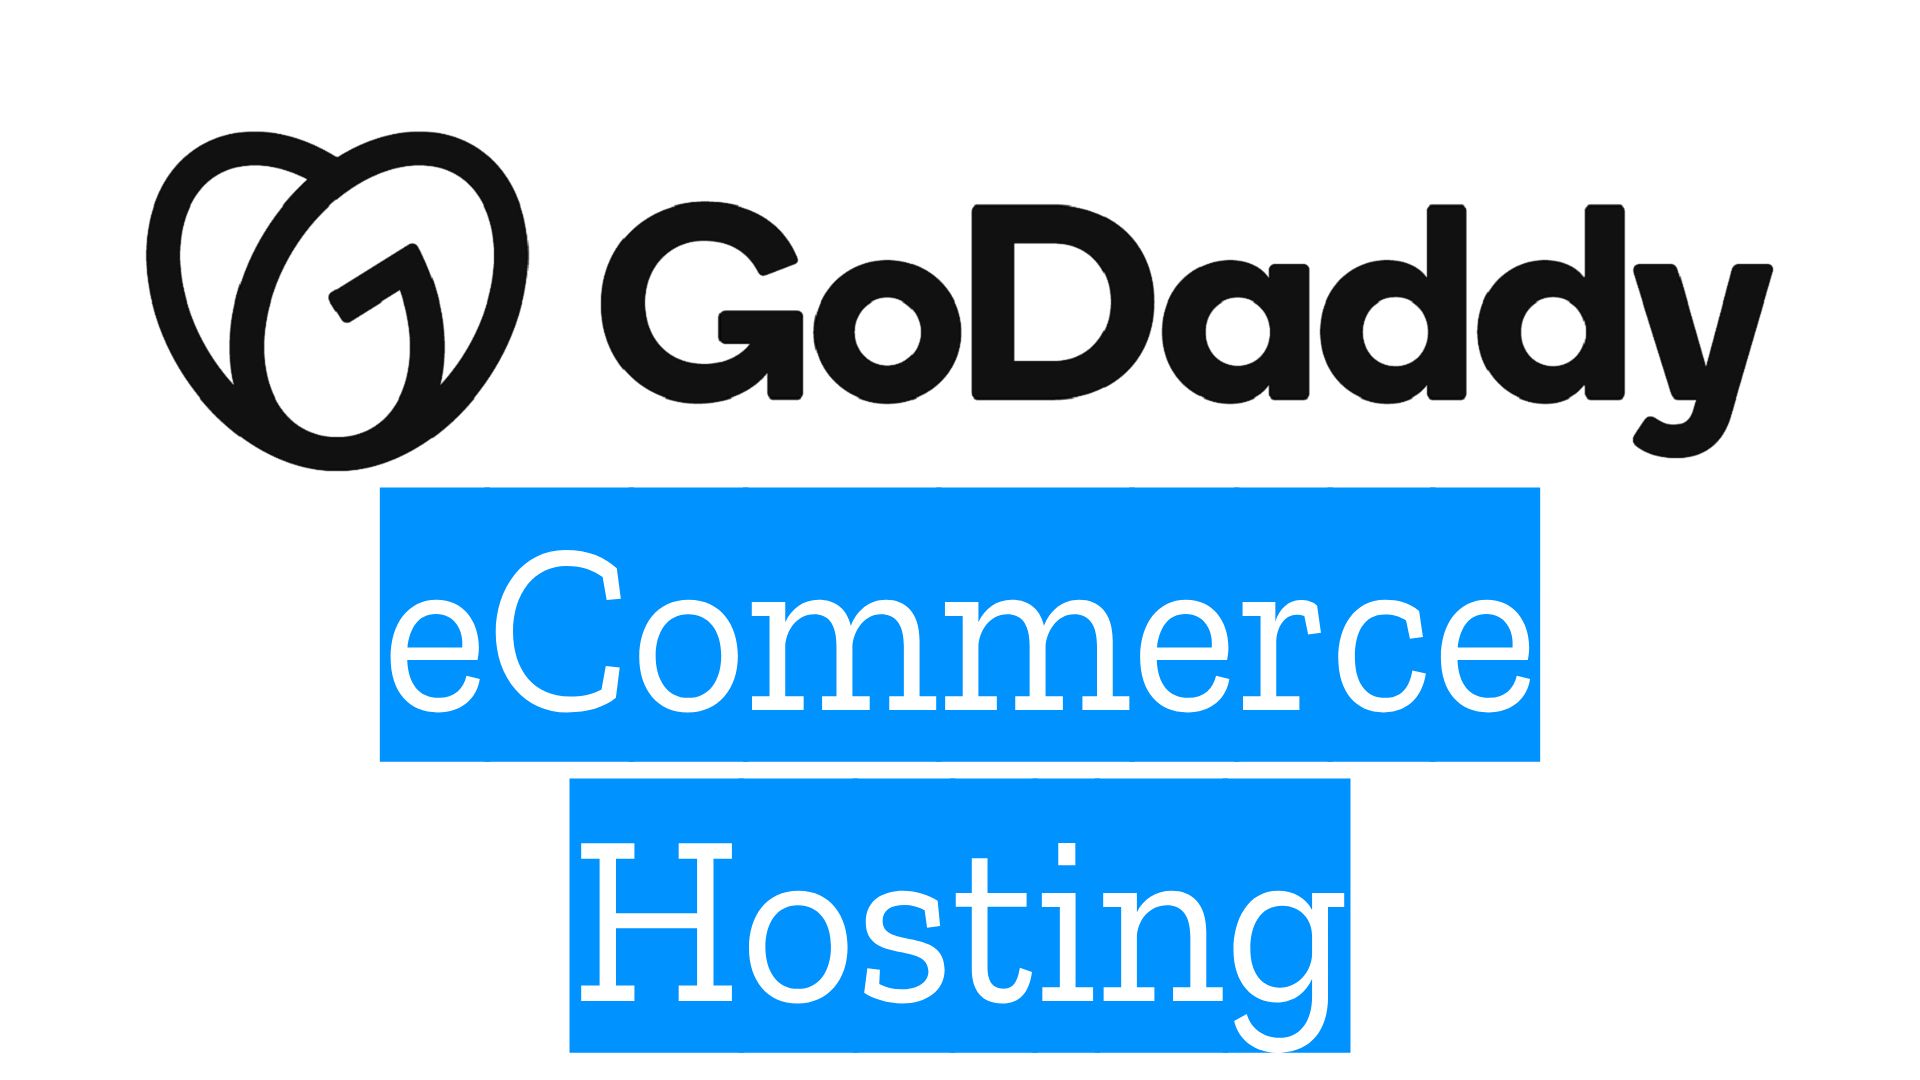 Godaddy eCommerce Hosting